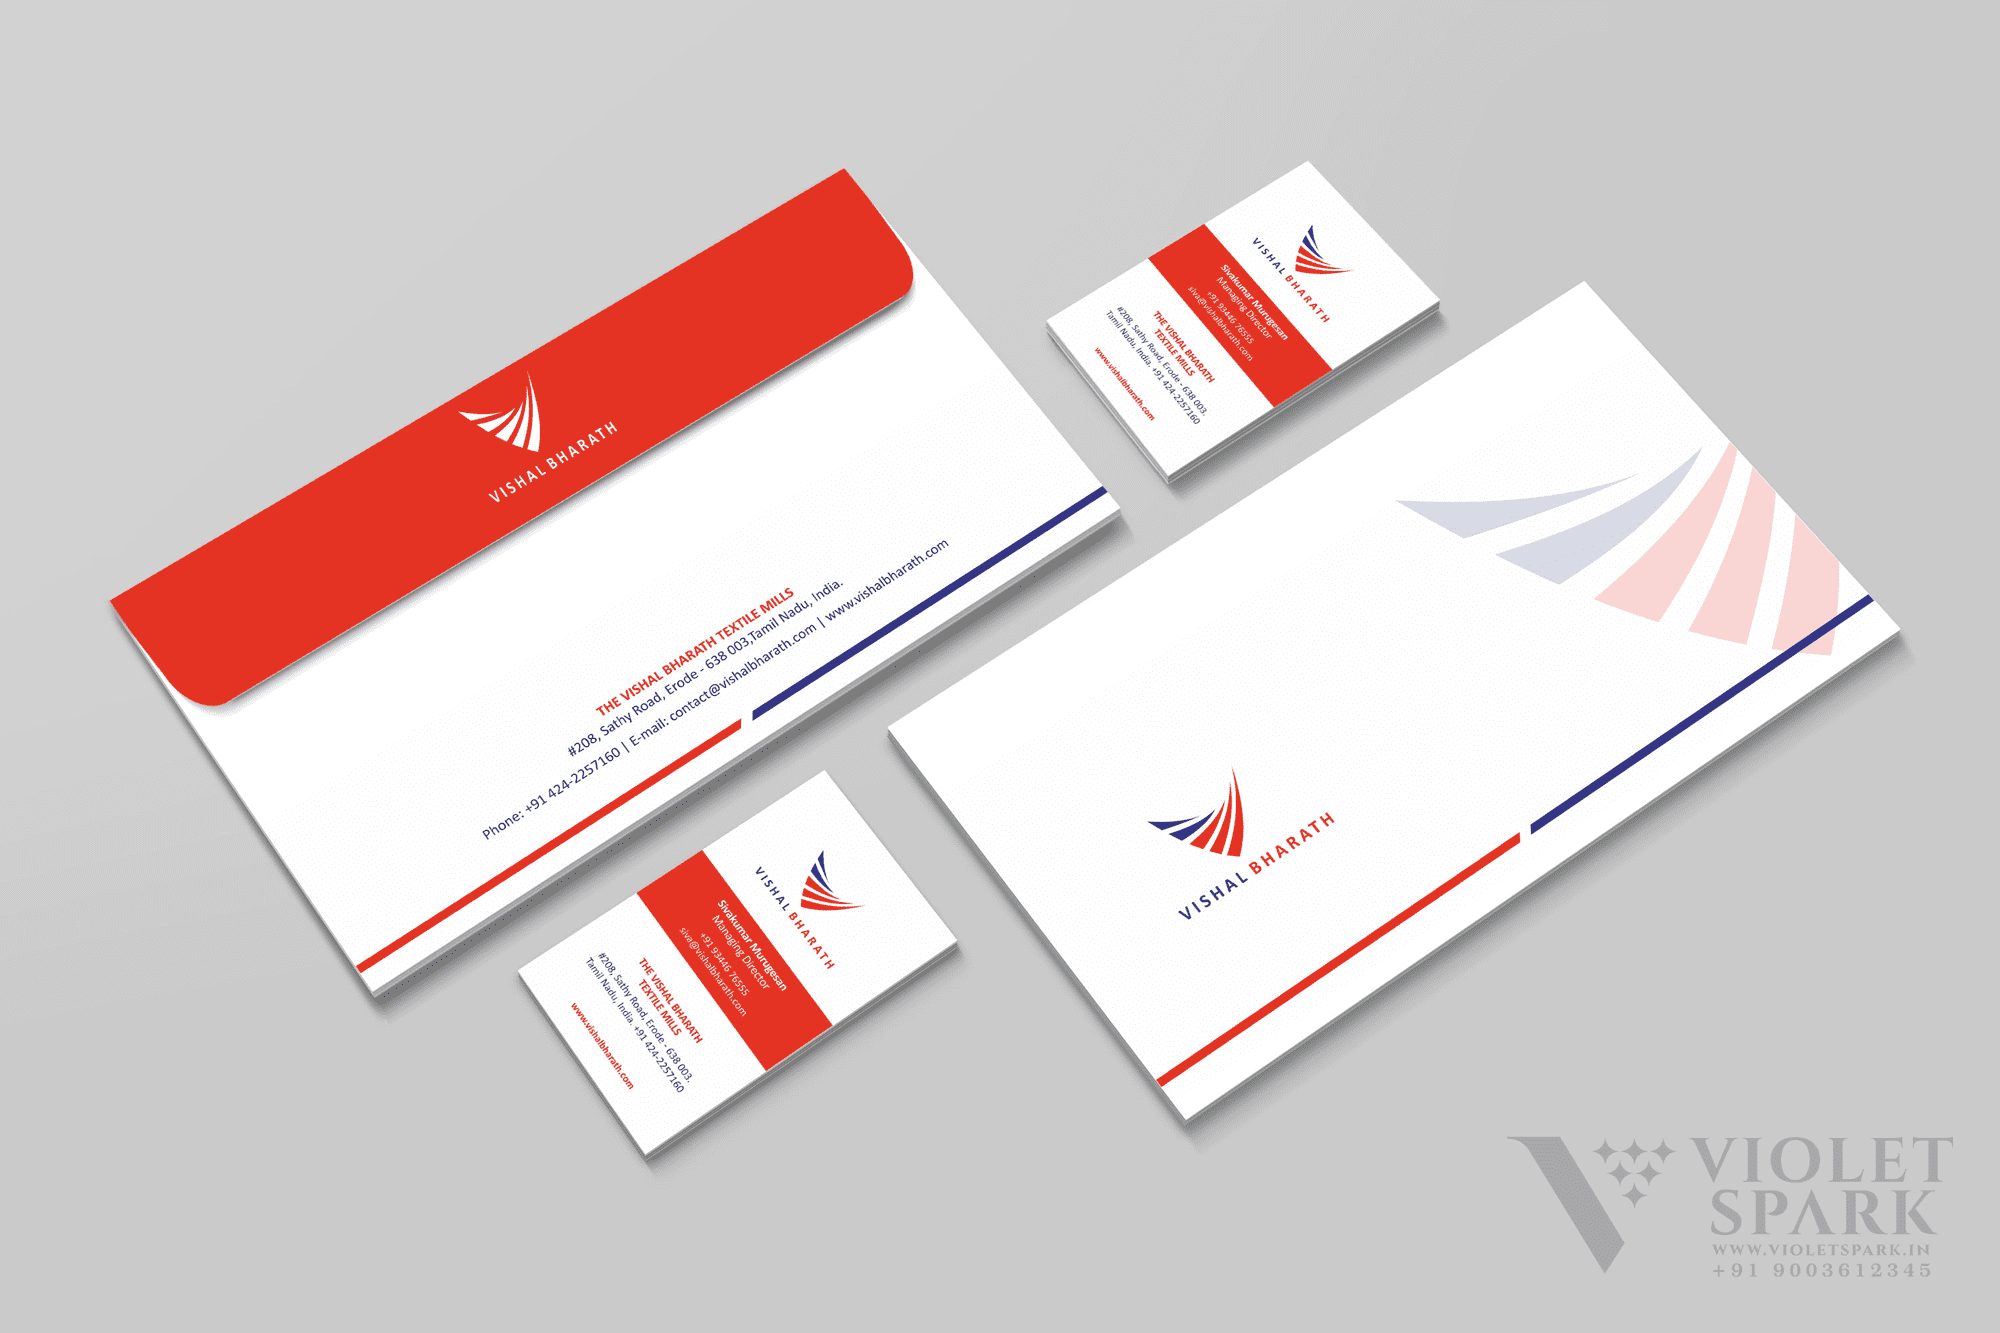 Vishal Bharat Visiting Card and Envelope Design Branding & Packaging Design in Erode by Violet Spark